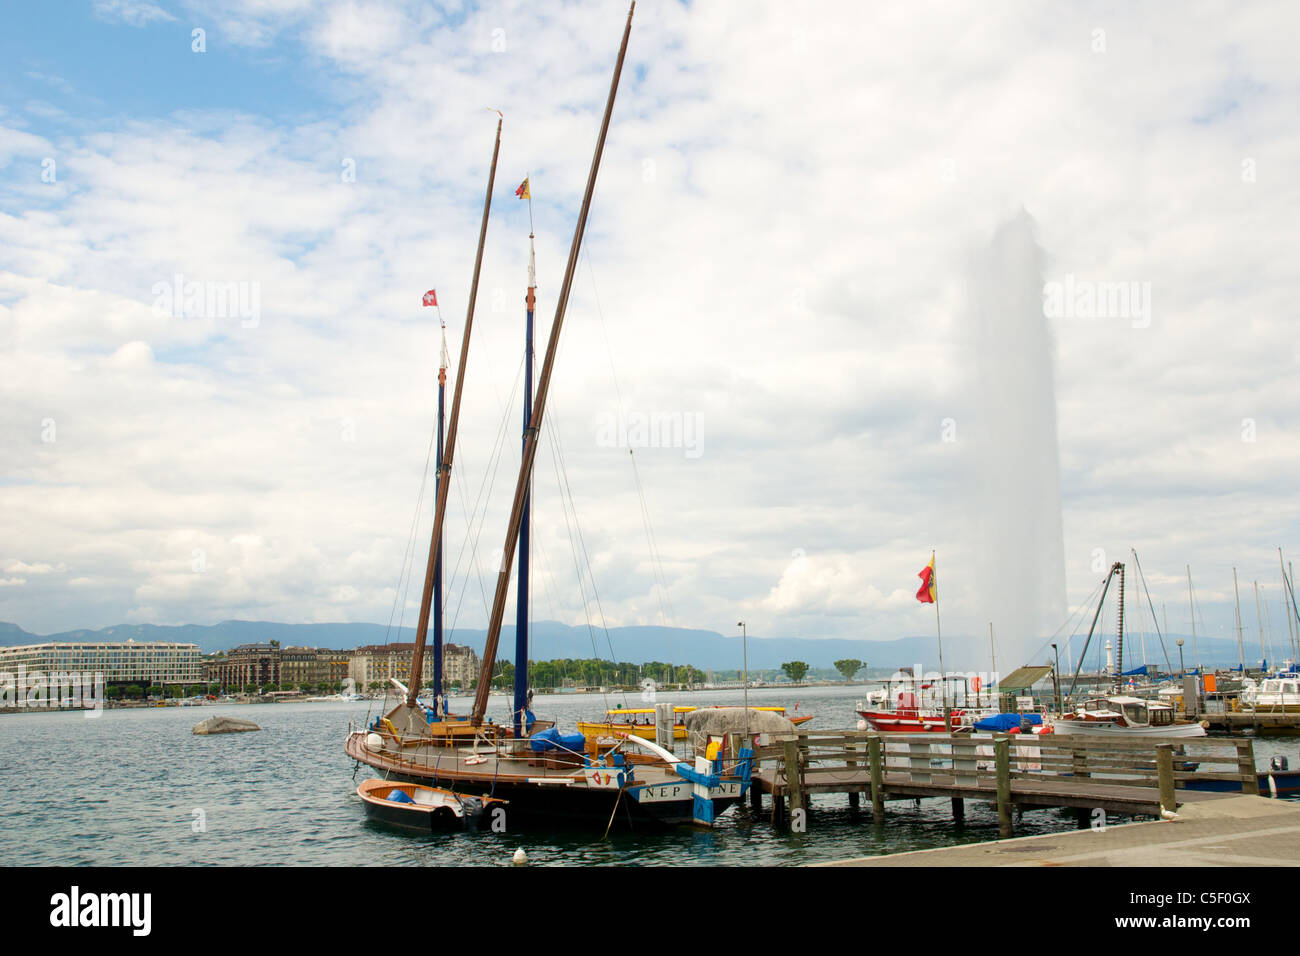 Le lac de Genève (lac Léman) voir avec bateaux et jet d'eau, Genève, Suisse Banque D'Images